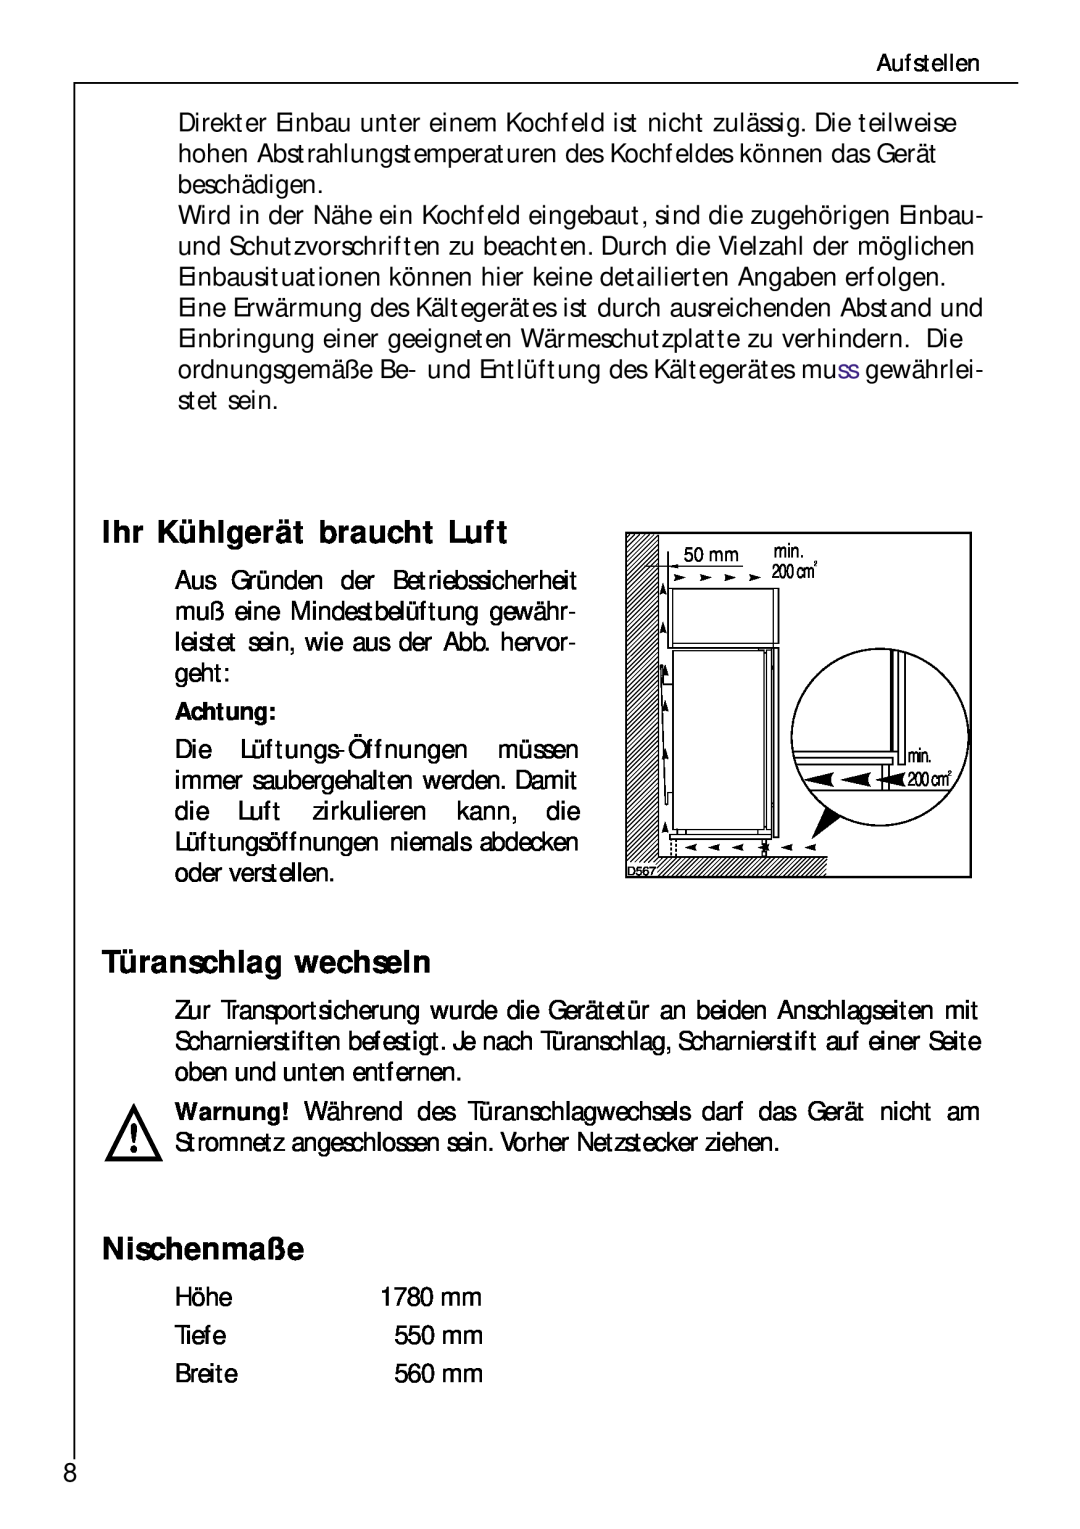 Electrolux Z 9 18 42-4 I user manual Ihr Kühlgerät braucht Luft, Türanschlag wechseln, Nischenmaße, Achtung 